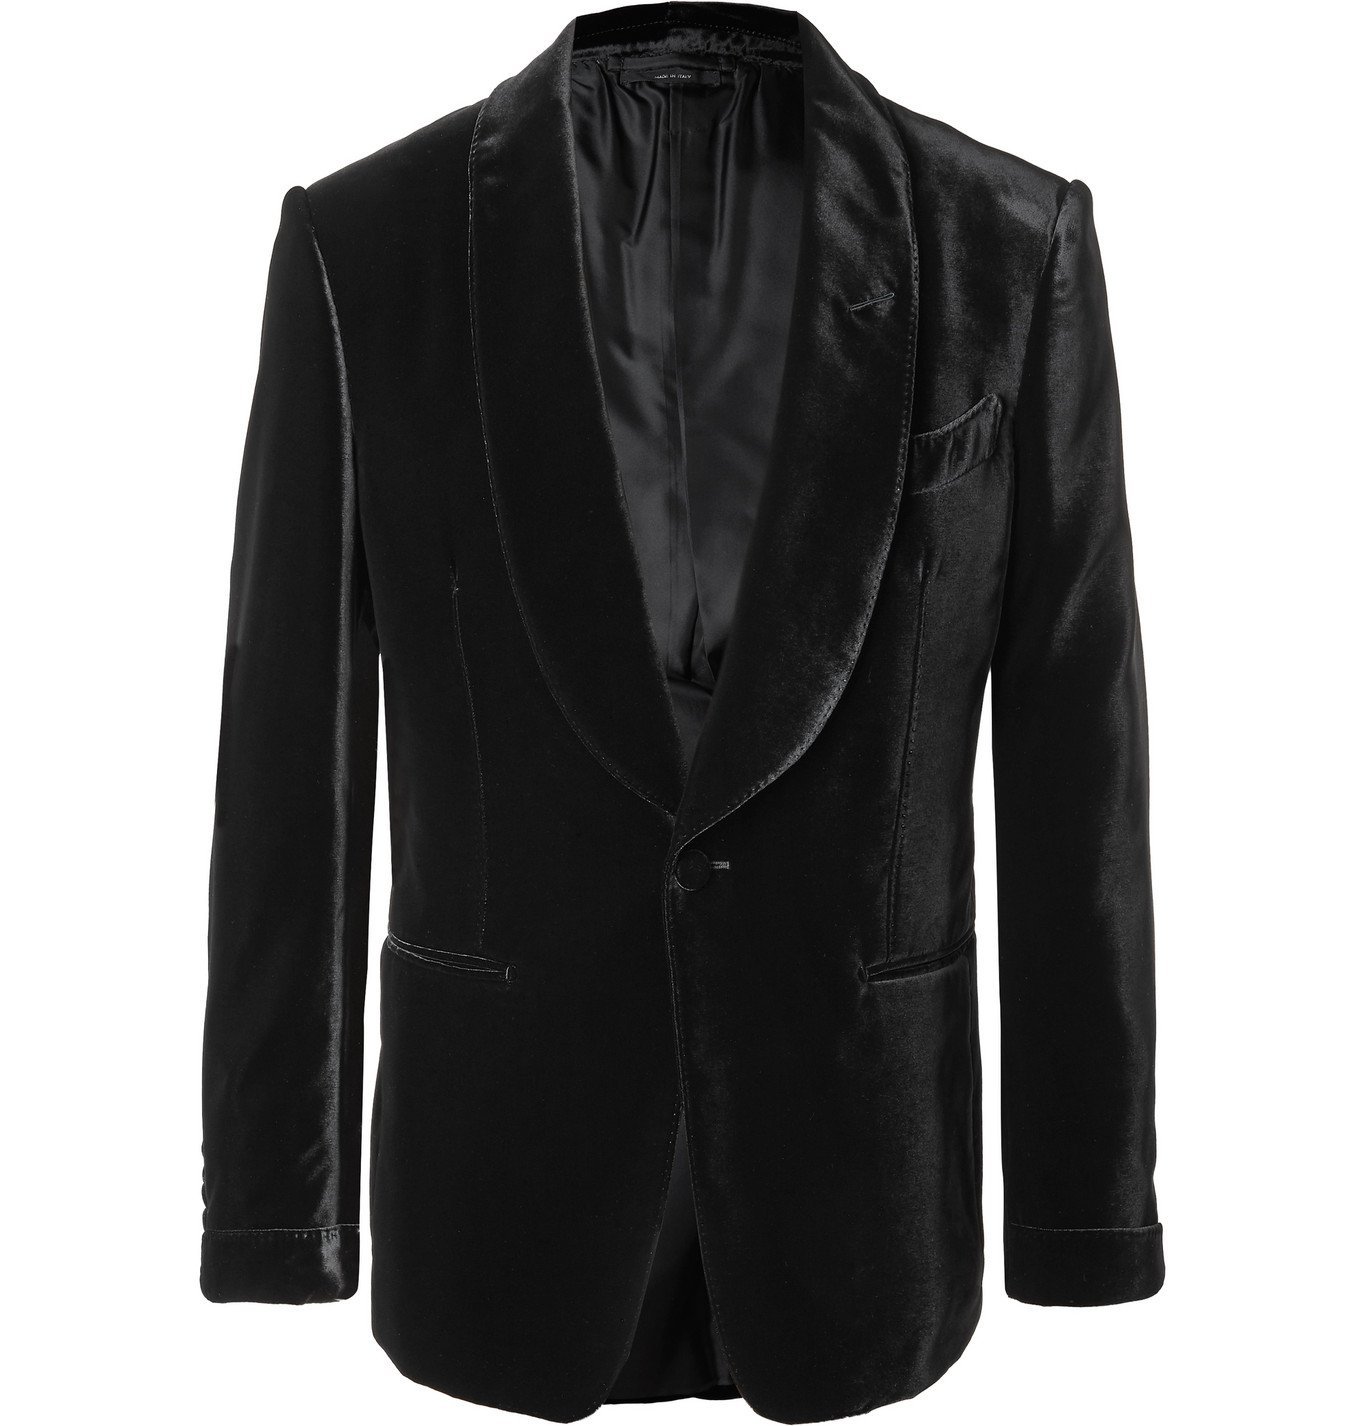 TOM FORD - Shelton Slim-Fit Shawl-Collar Velvet Tuxedo Jacket - Black ...